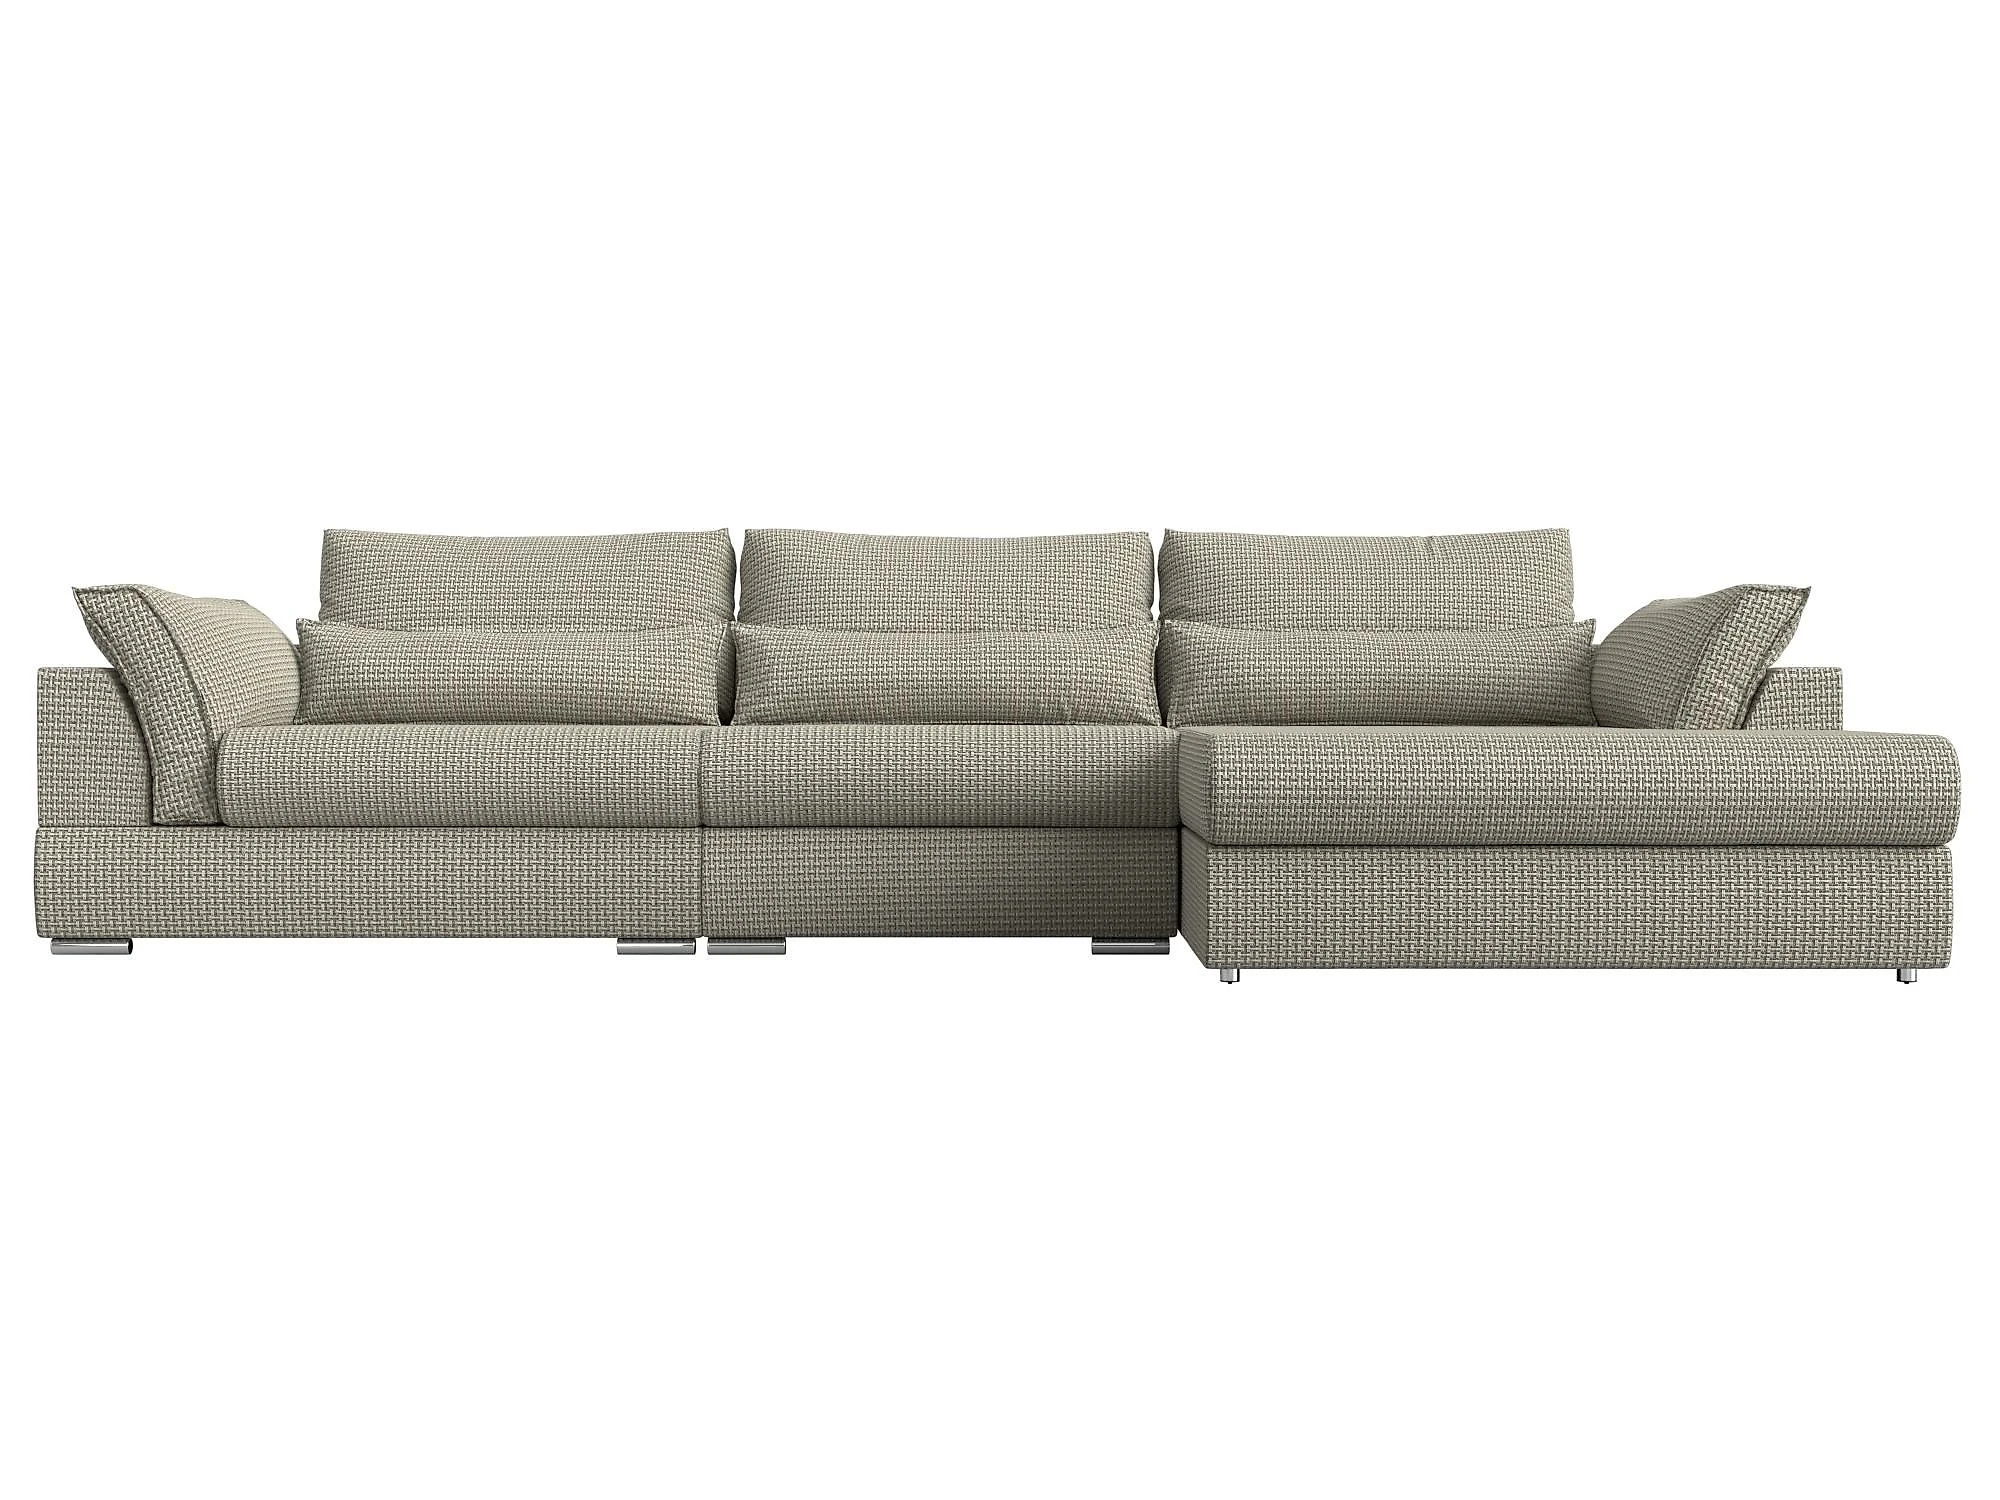  угловой диван из рогожки Пекин Лонг Дизайн 10